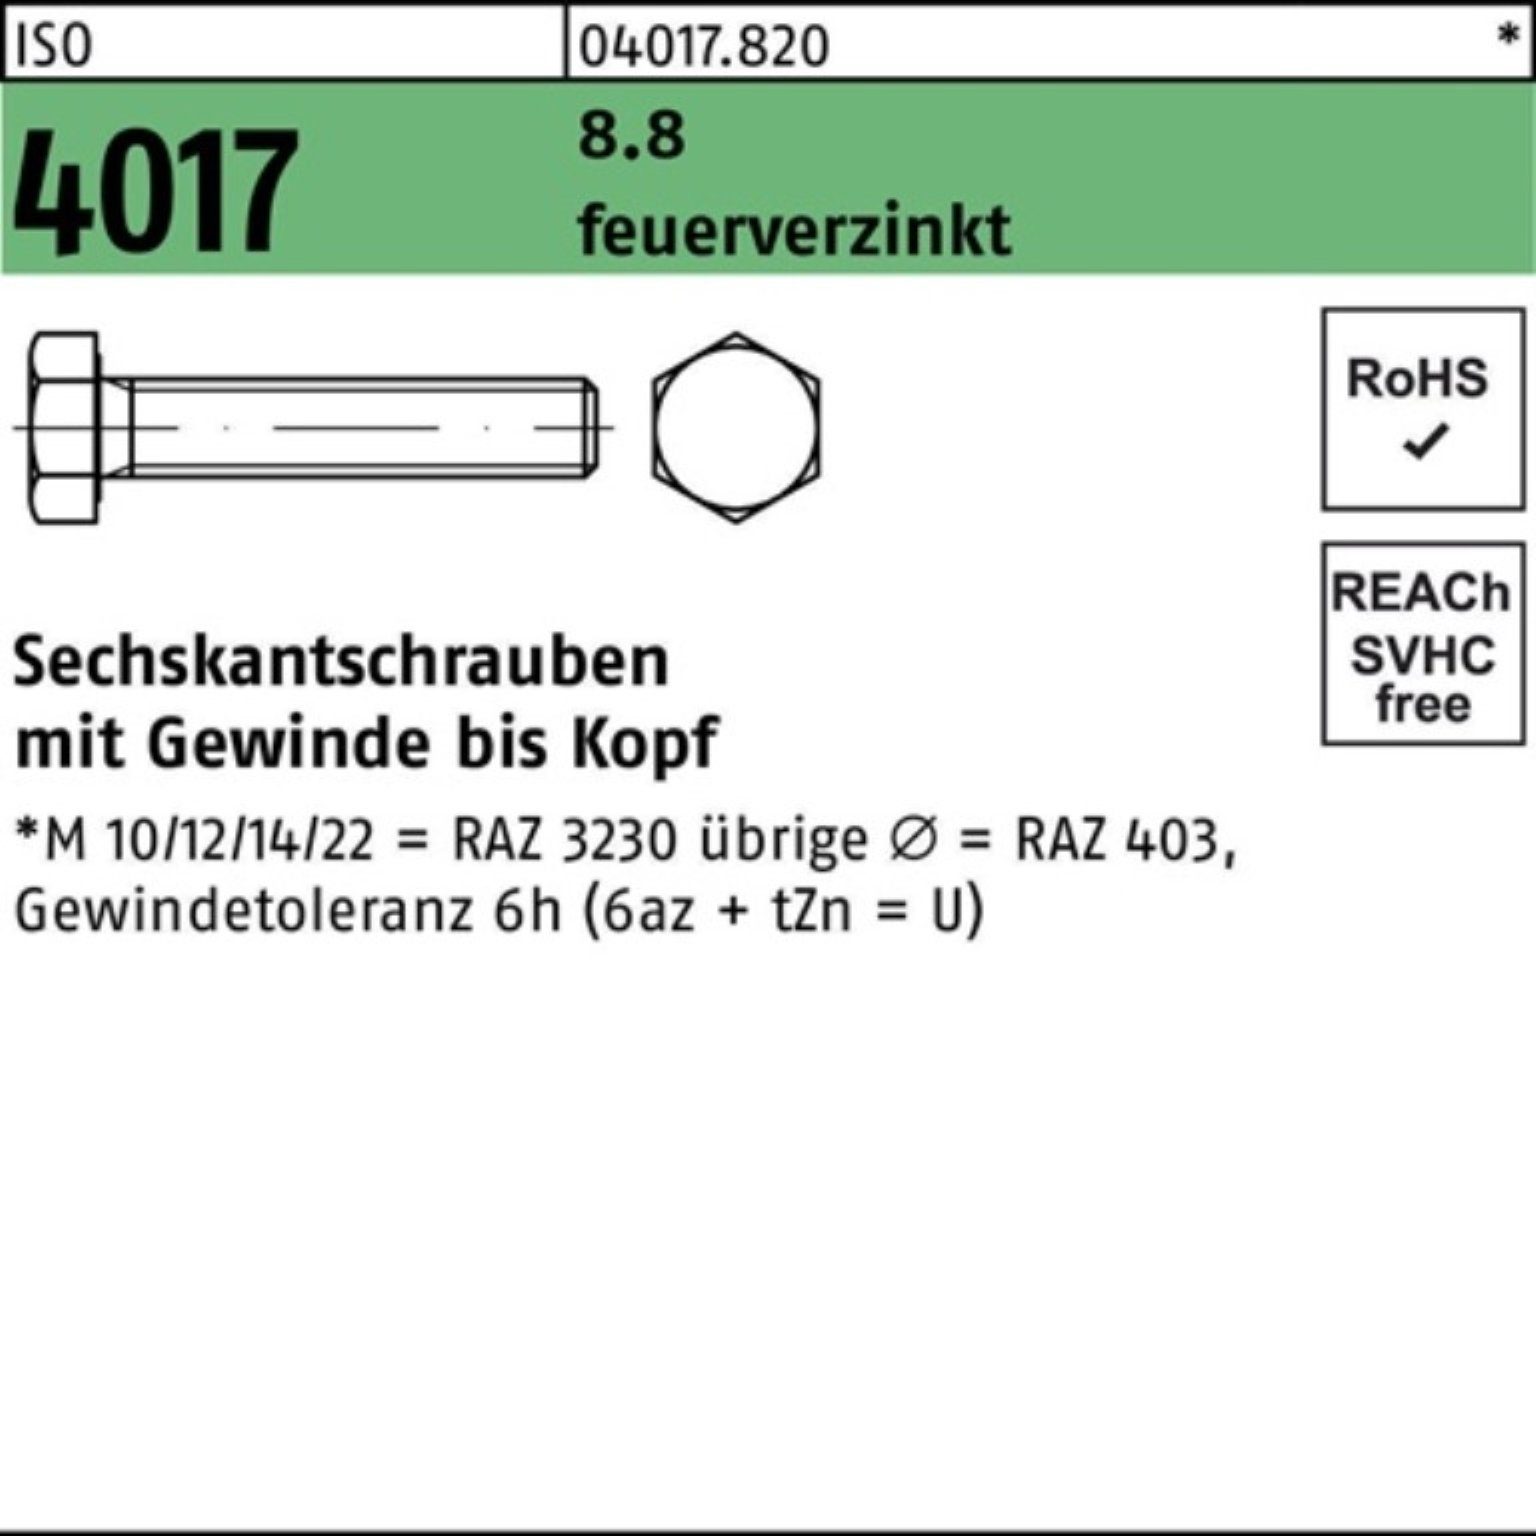 Bufab Sechskantschraube 100er Pack Sechskantschraube ISO 4017 VG M30x 100 8.8 feuerverz. 1 St